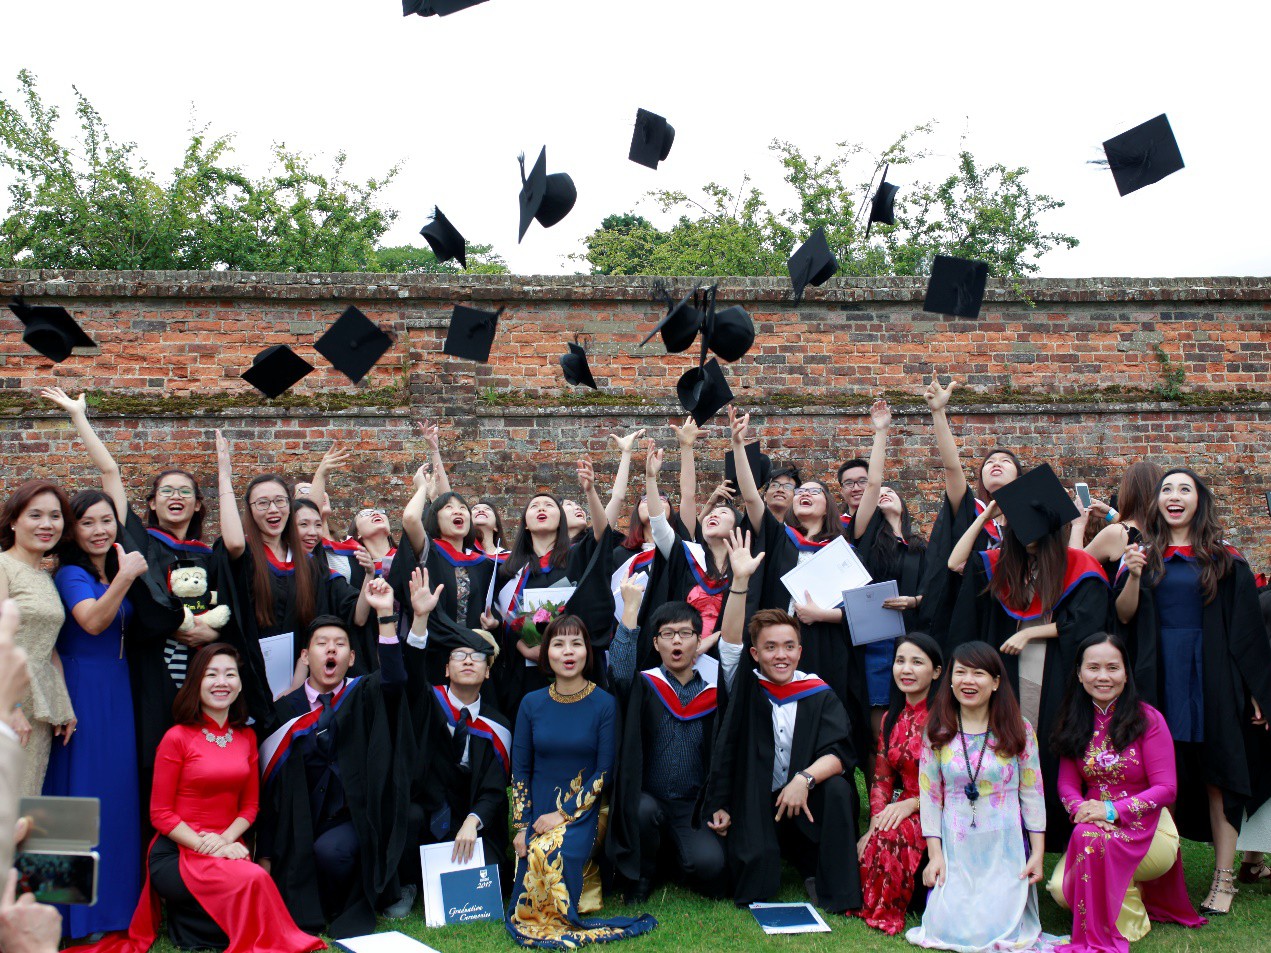 Sinh viên khóa 5 Chương trình Cử nhân Kinh doanh tốt nghiệp tại Đại học Bedfordshire, Anh Quốc